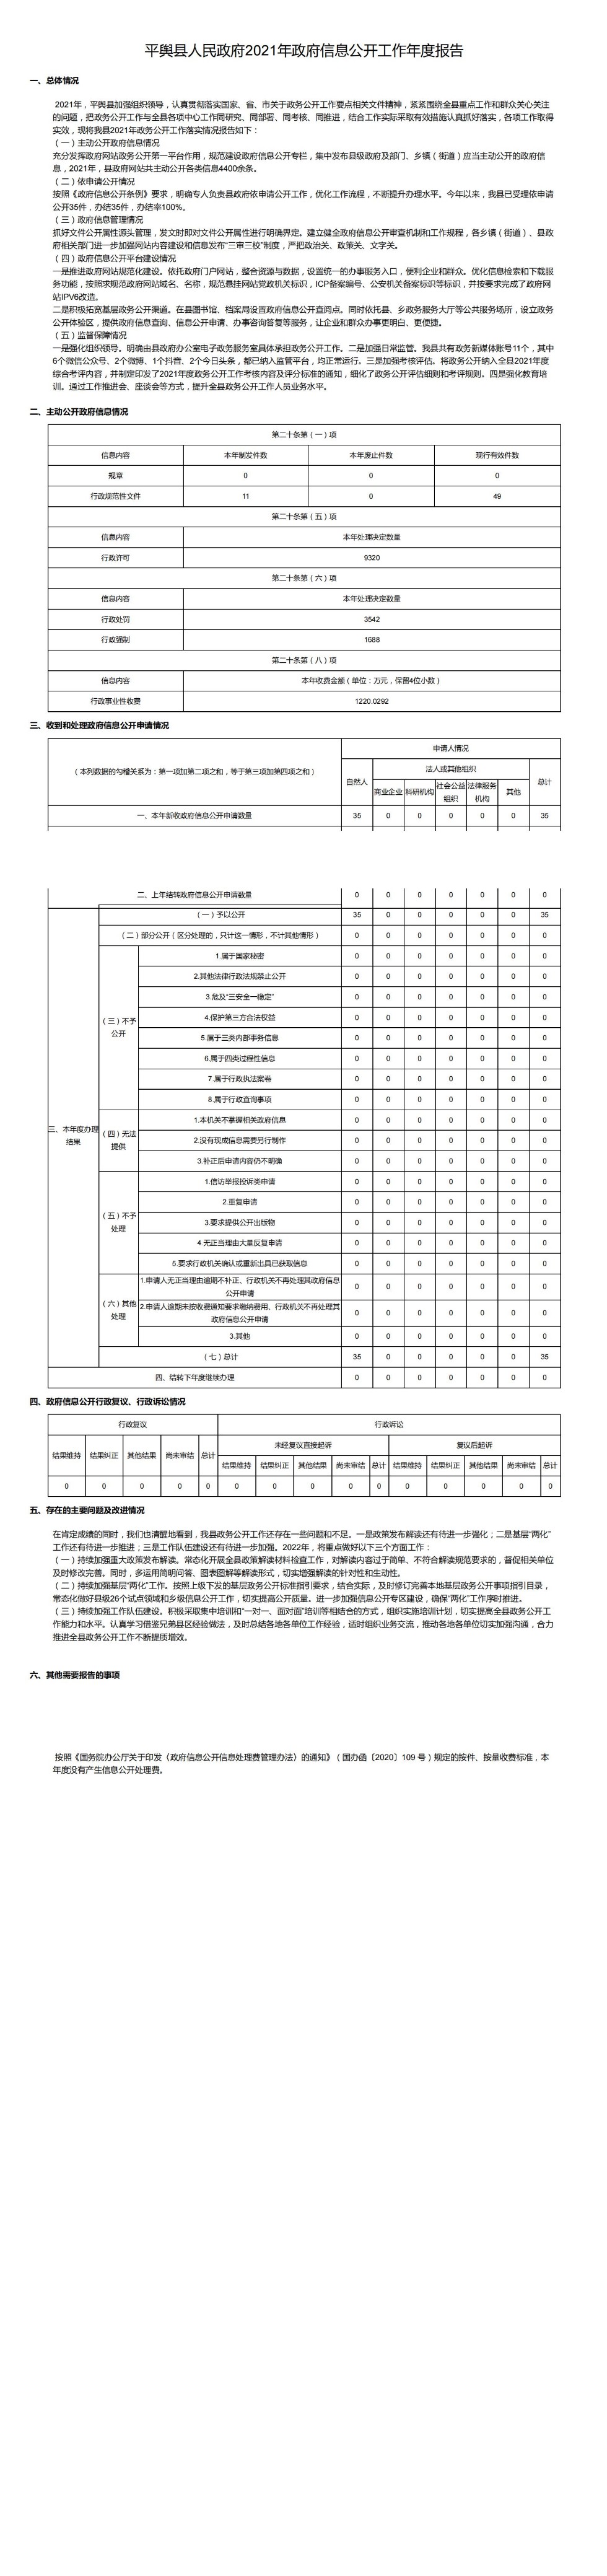 平舆县人民政府2021年政府信息公开工作年度报告_00.jpg